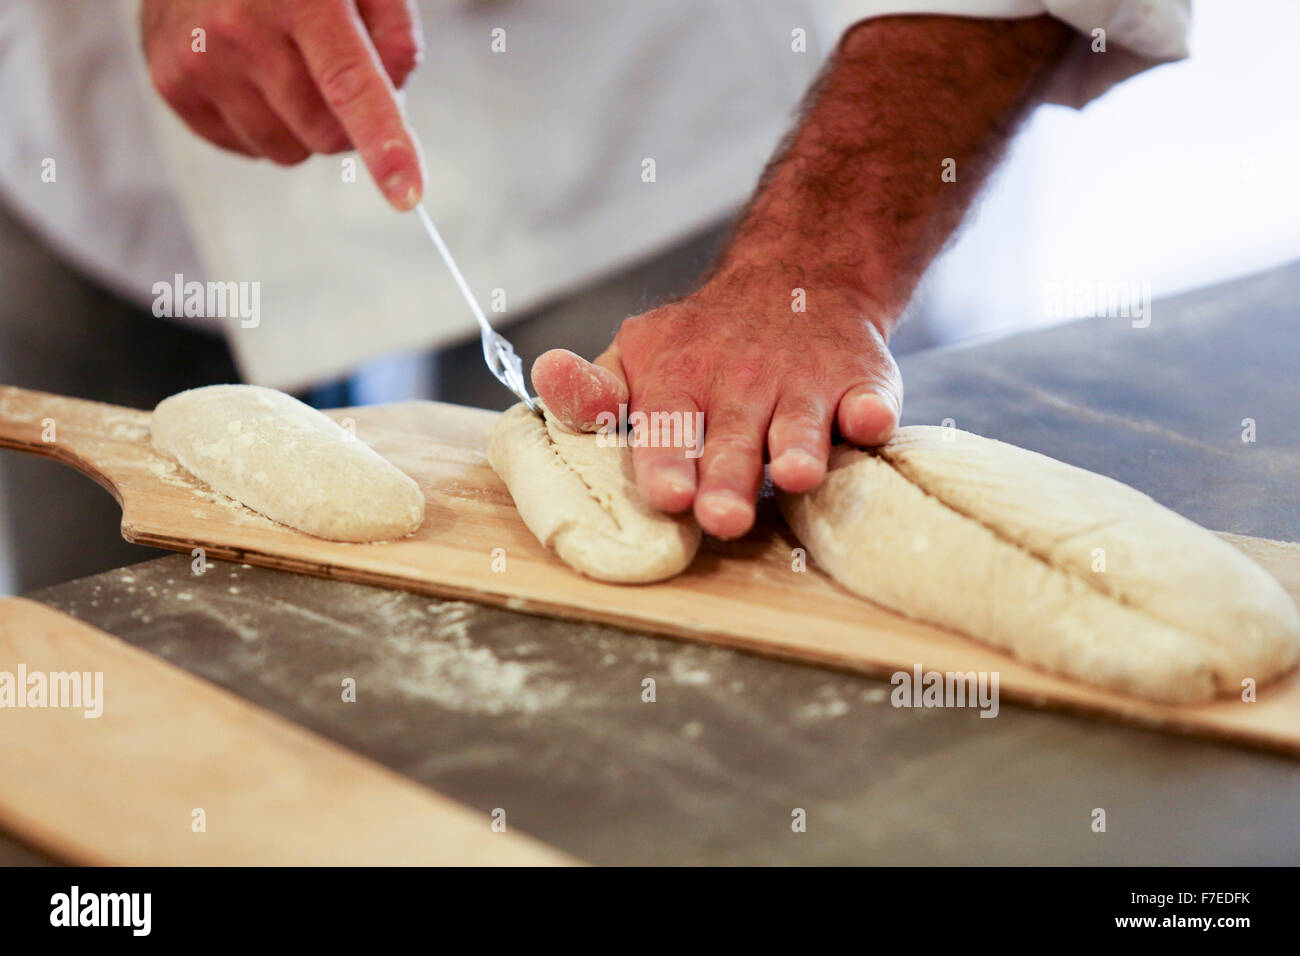 Les pains en forme sont autorisés à levain avant cuisson, photographié à une boulangerie boutique Banque D'Images